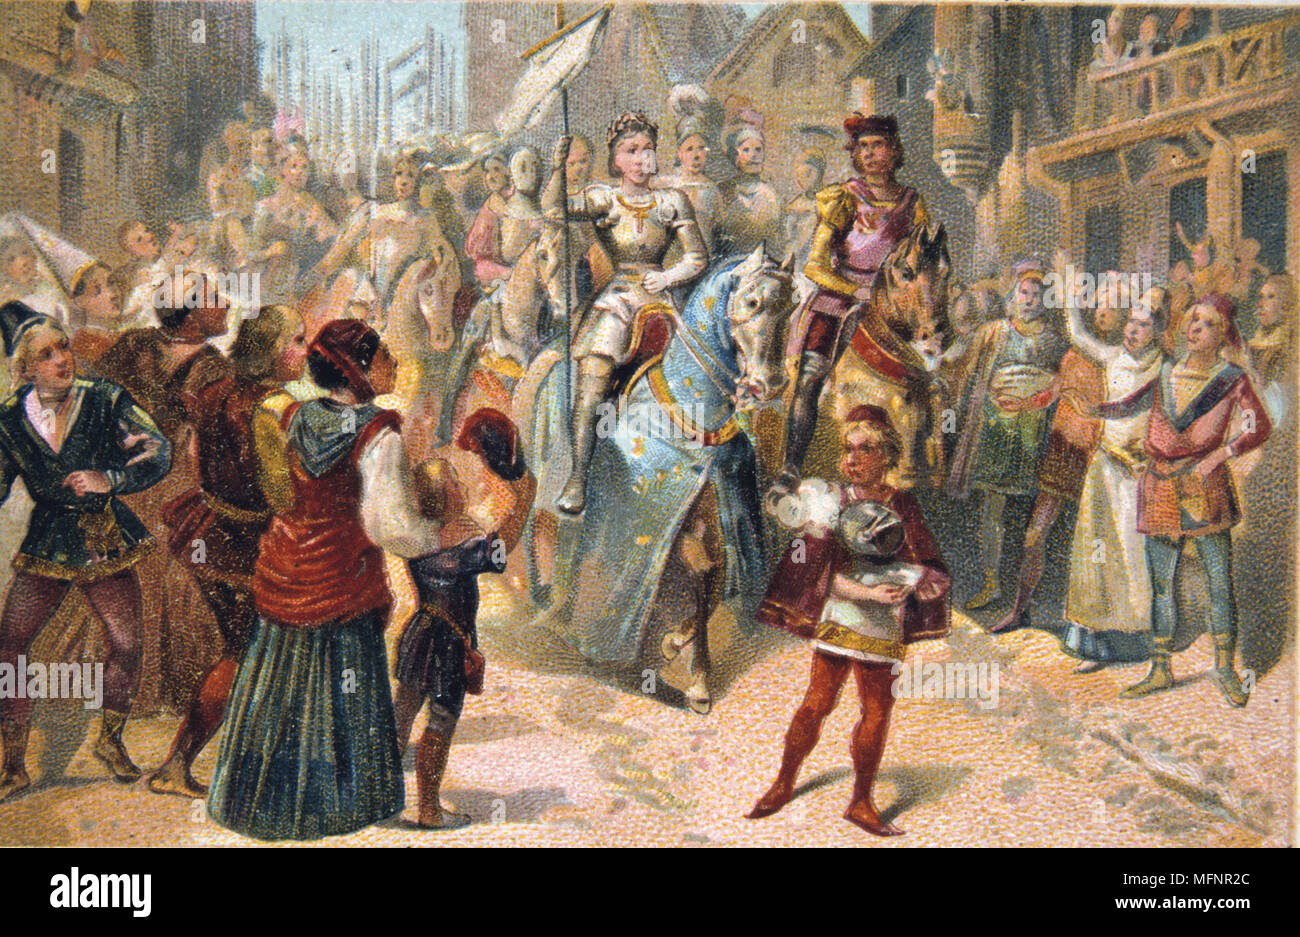 Jeanne d'Arc (Saint Joan c1412-1431) héroïne nationale française pendant la Guerre de Cent Ans entre la France et l'Angleterre. Joan entrant dans Orléans en triomphe, 1429. Xixe siècle Trade Card Chromolithographie Banque D'Images